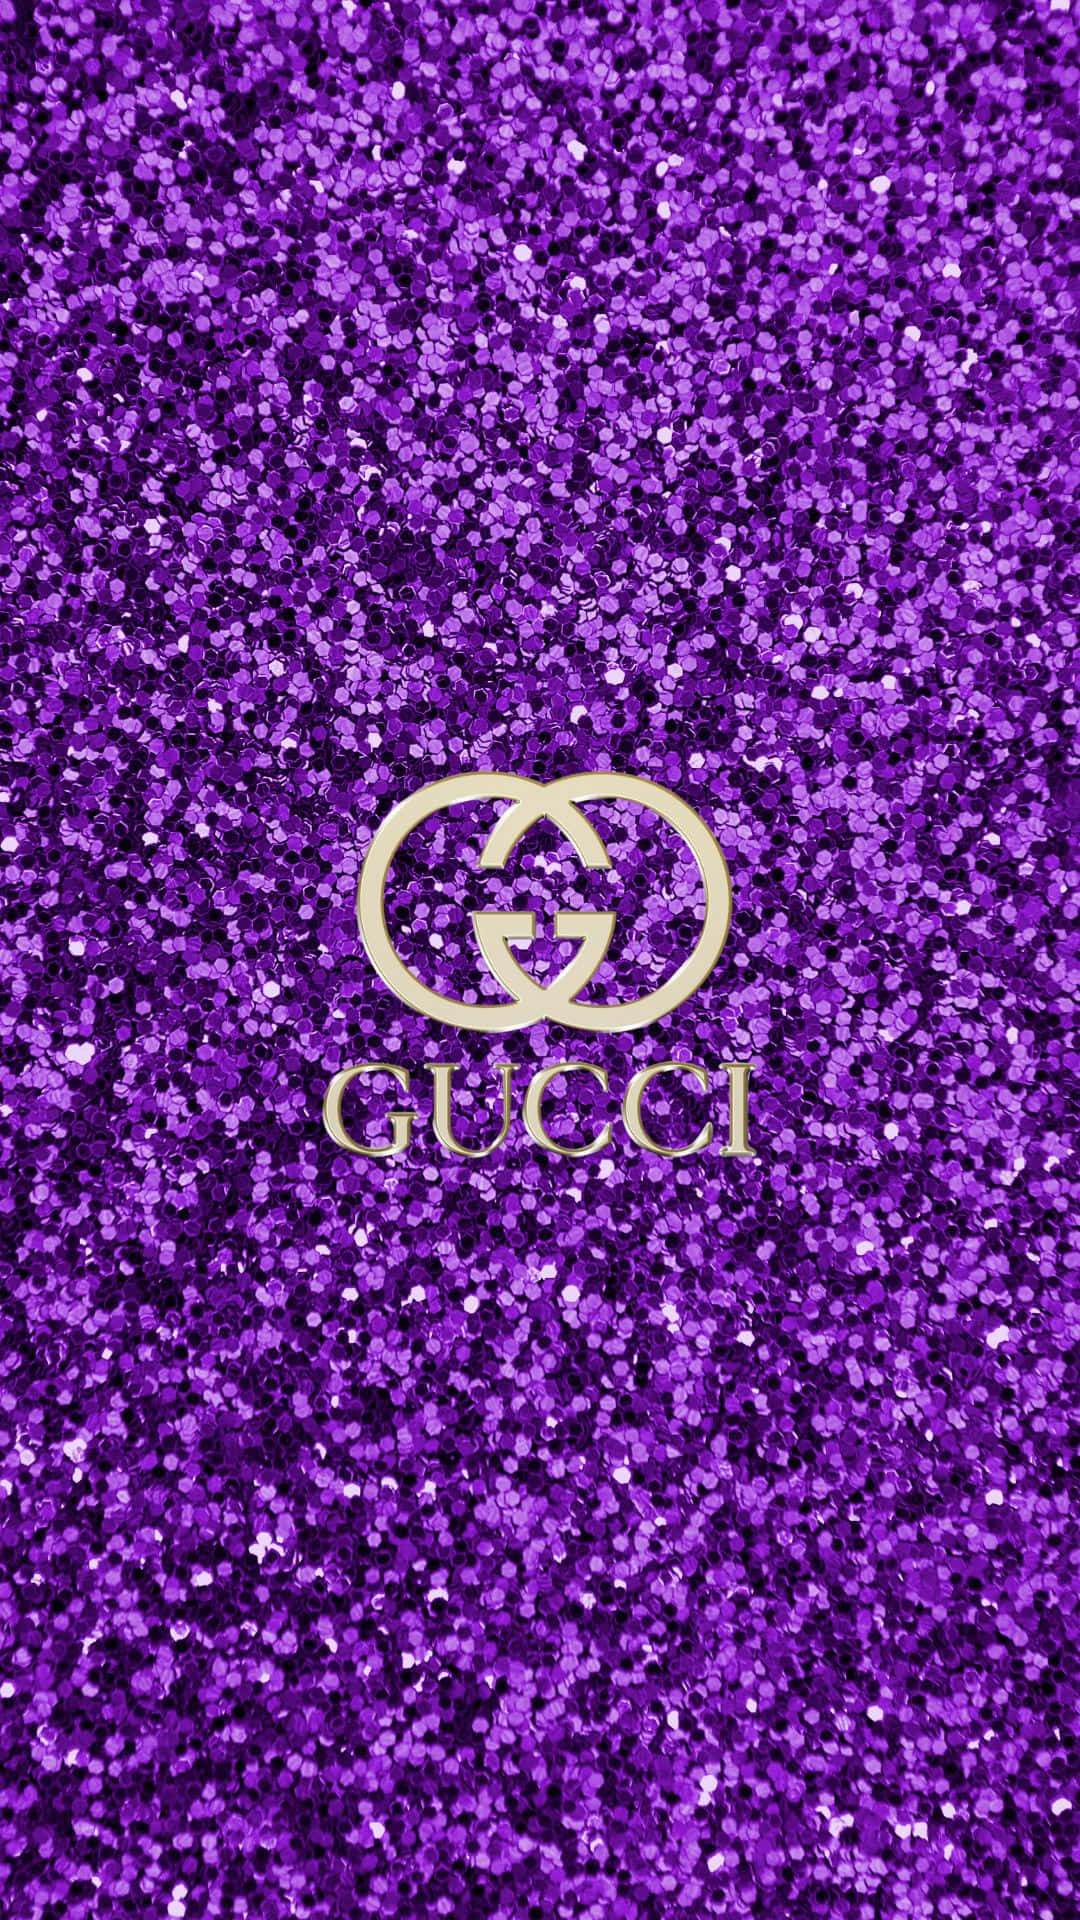 Lavish in luxury with Purple Gucci apparel Wallpaper